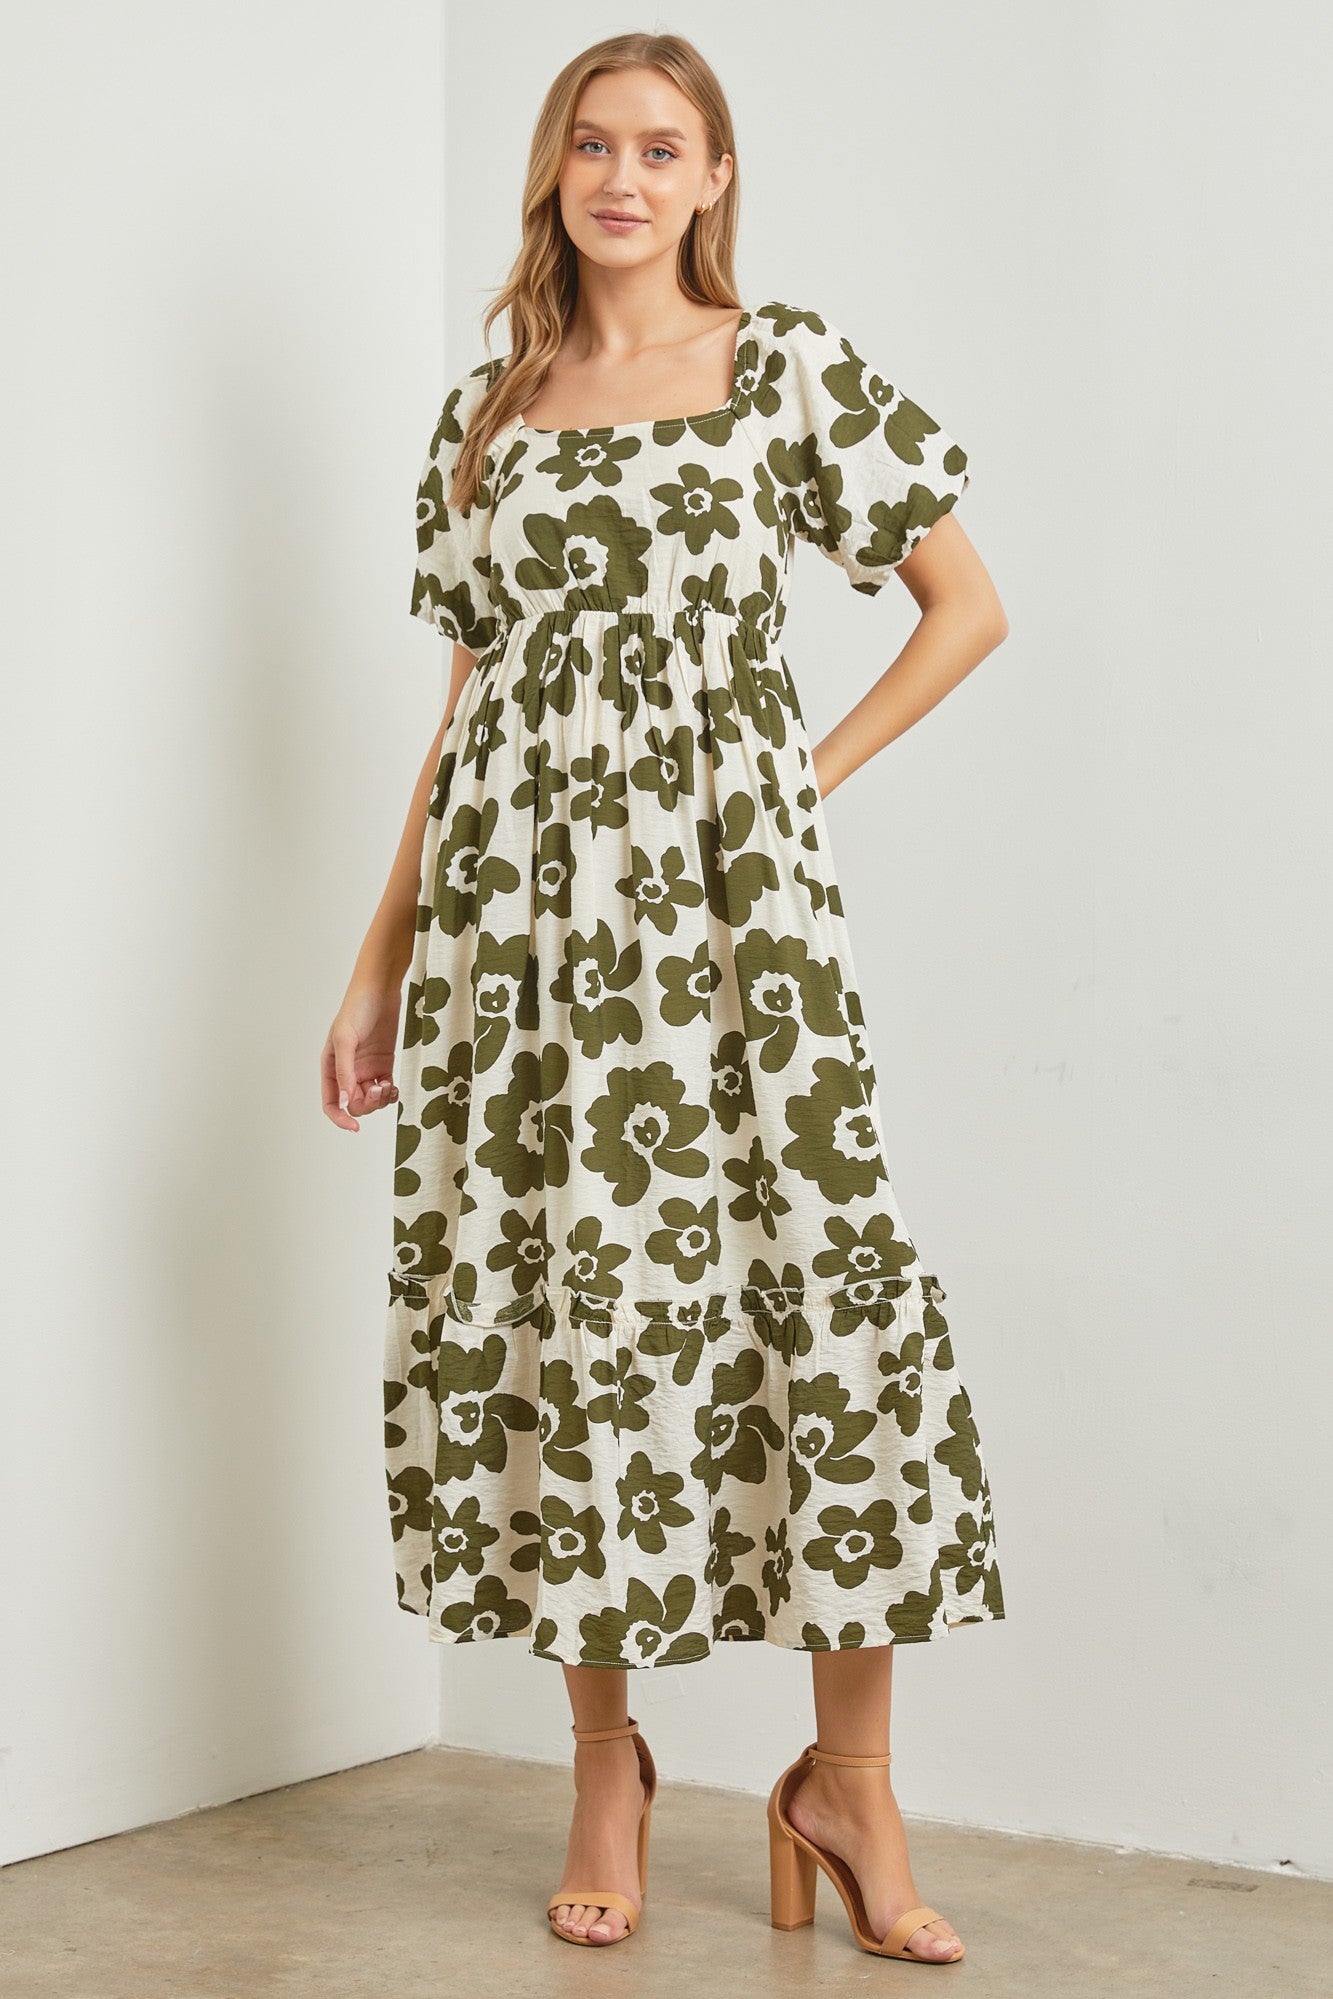 Big Floral Dress in Olive